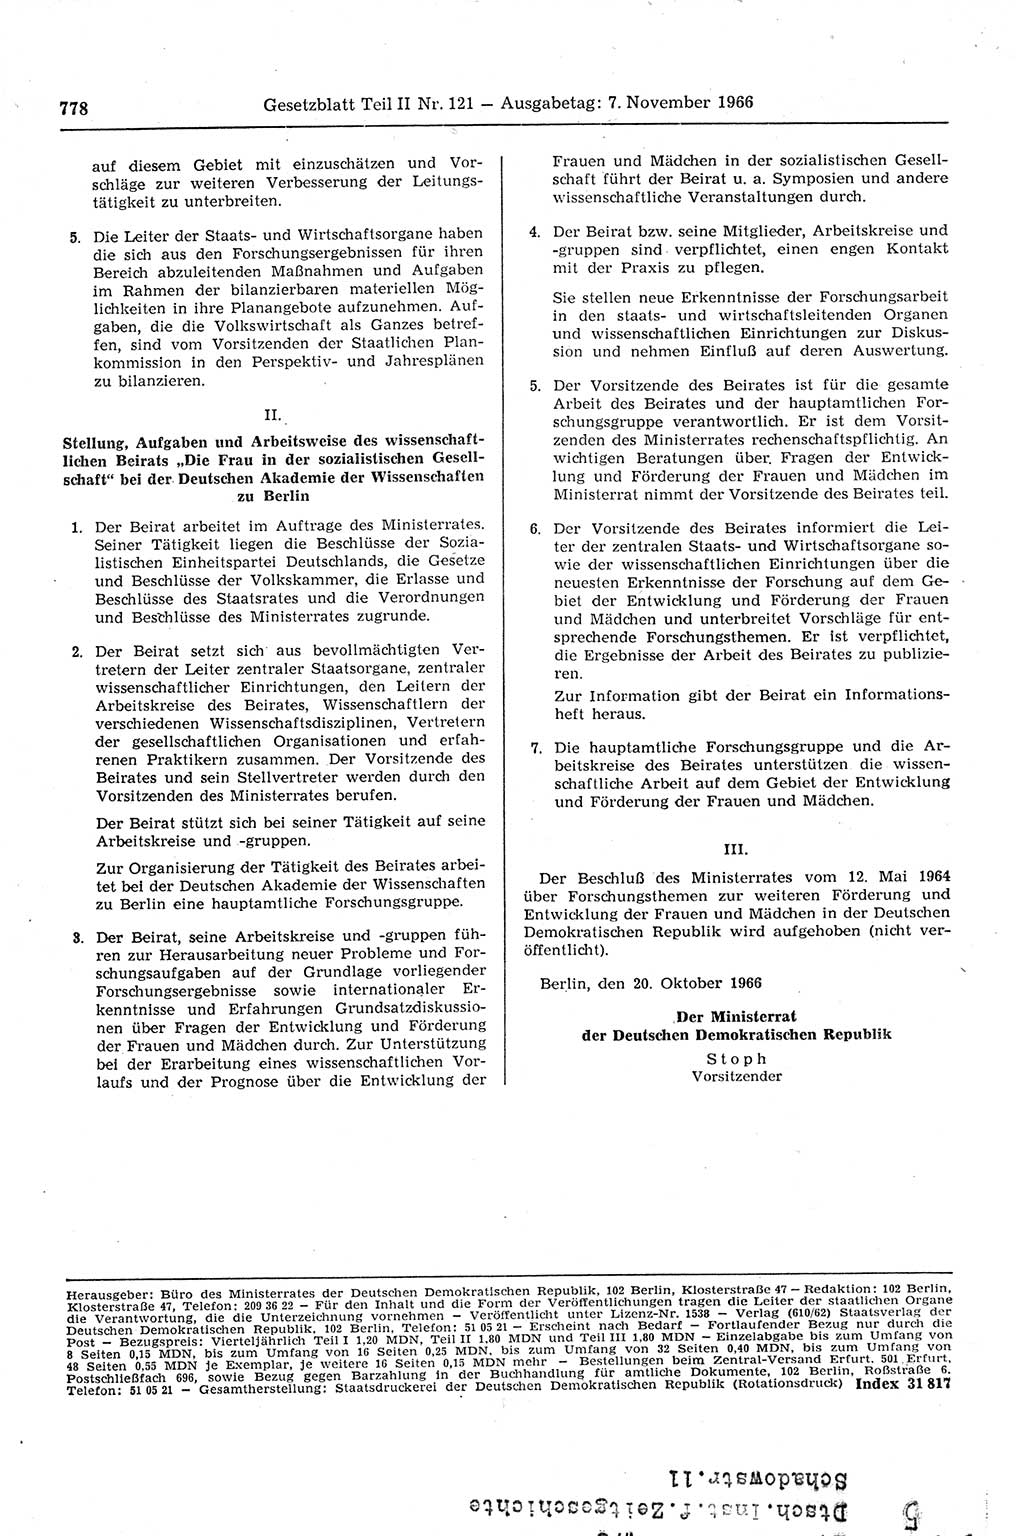 Gesetzblatt (GBl.) der Deutschen Demokratischen Republik (DDR) Teil ⅠⅠ 1966, Seite 778 (GBl. DDR ⅠⅠ 1966, S. 778)